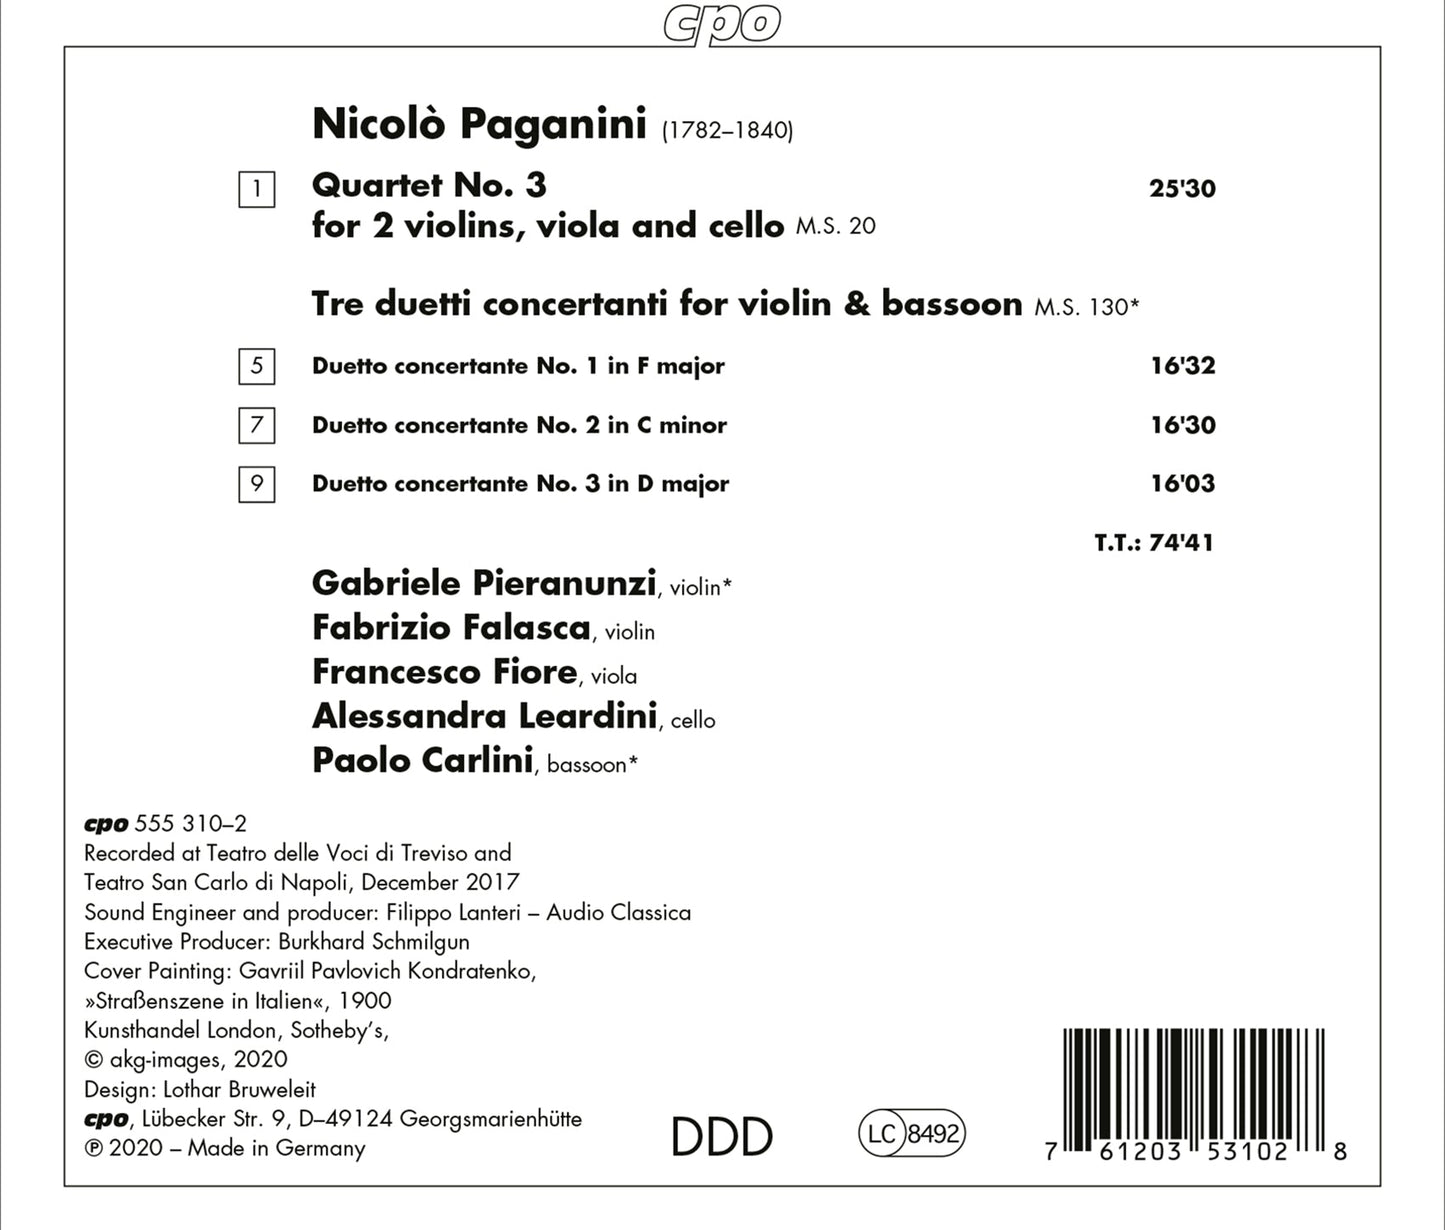 Paganini: String Quartet No. 3 - Tre Duetti Concertanti